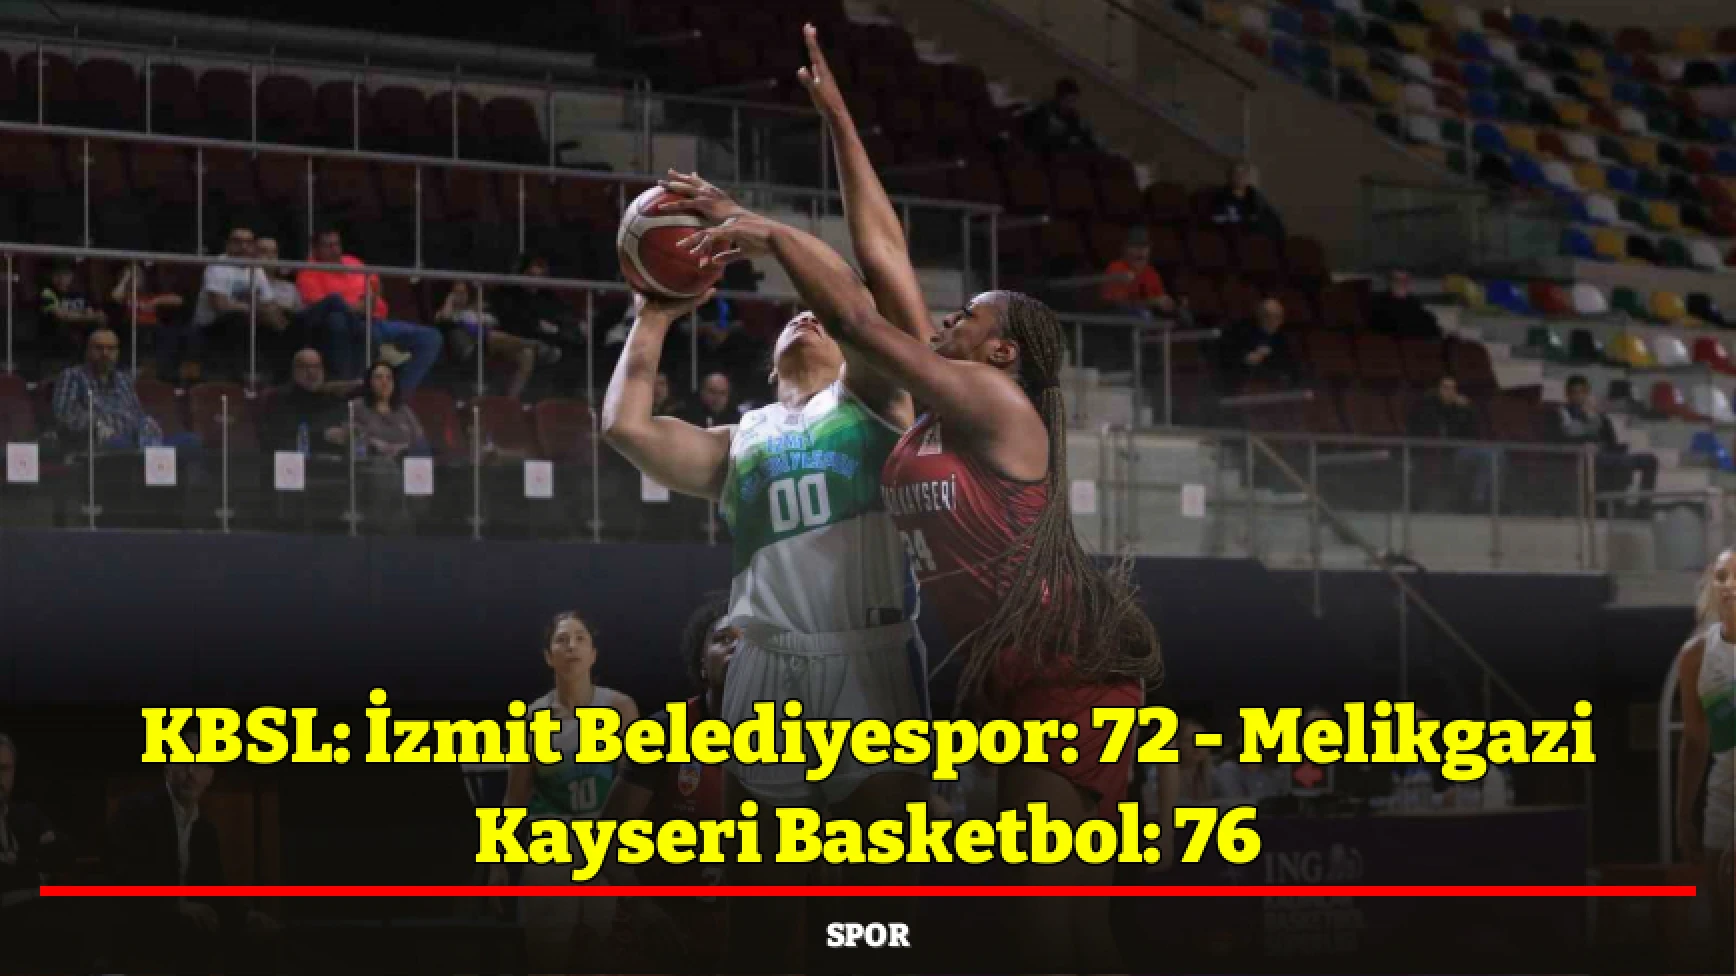 KBSL: İzmit Belediyespor: 72 - Melikgazi Kayseri Basketbol: 76